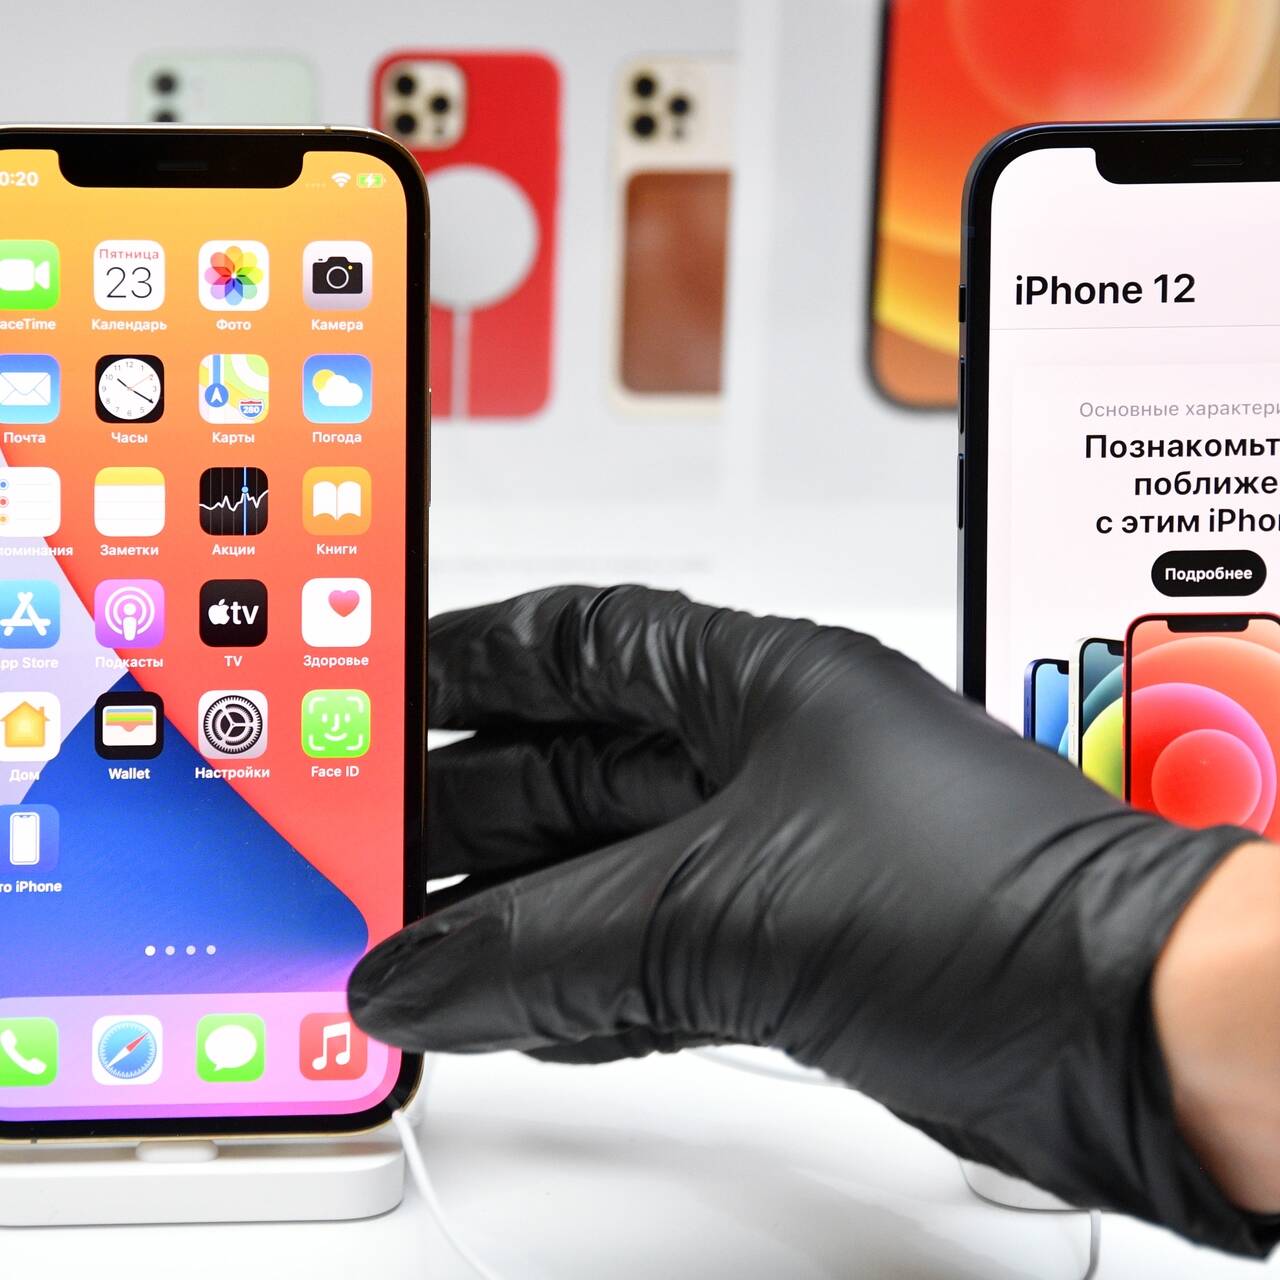 Россияне закупились новыми iPhone и стали продавать их с наценкой: Гаджеты:  Наука и техника: Lenta.ru